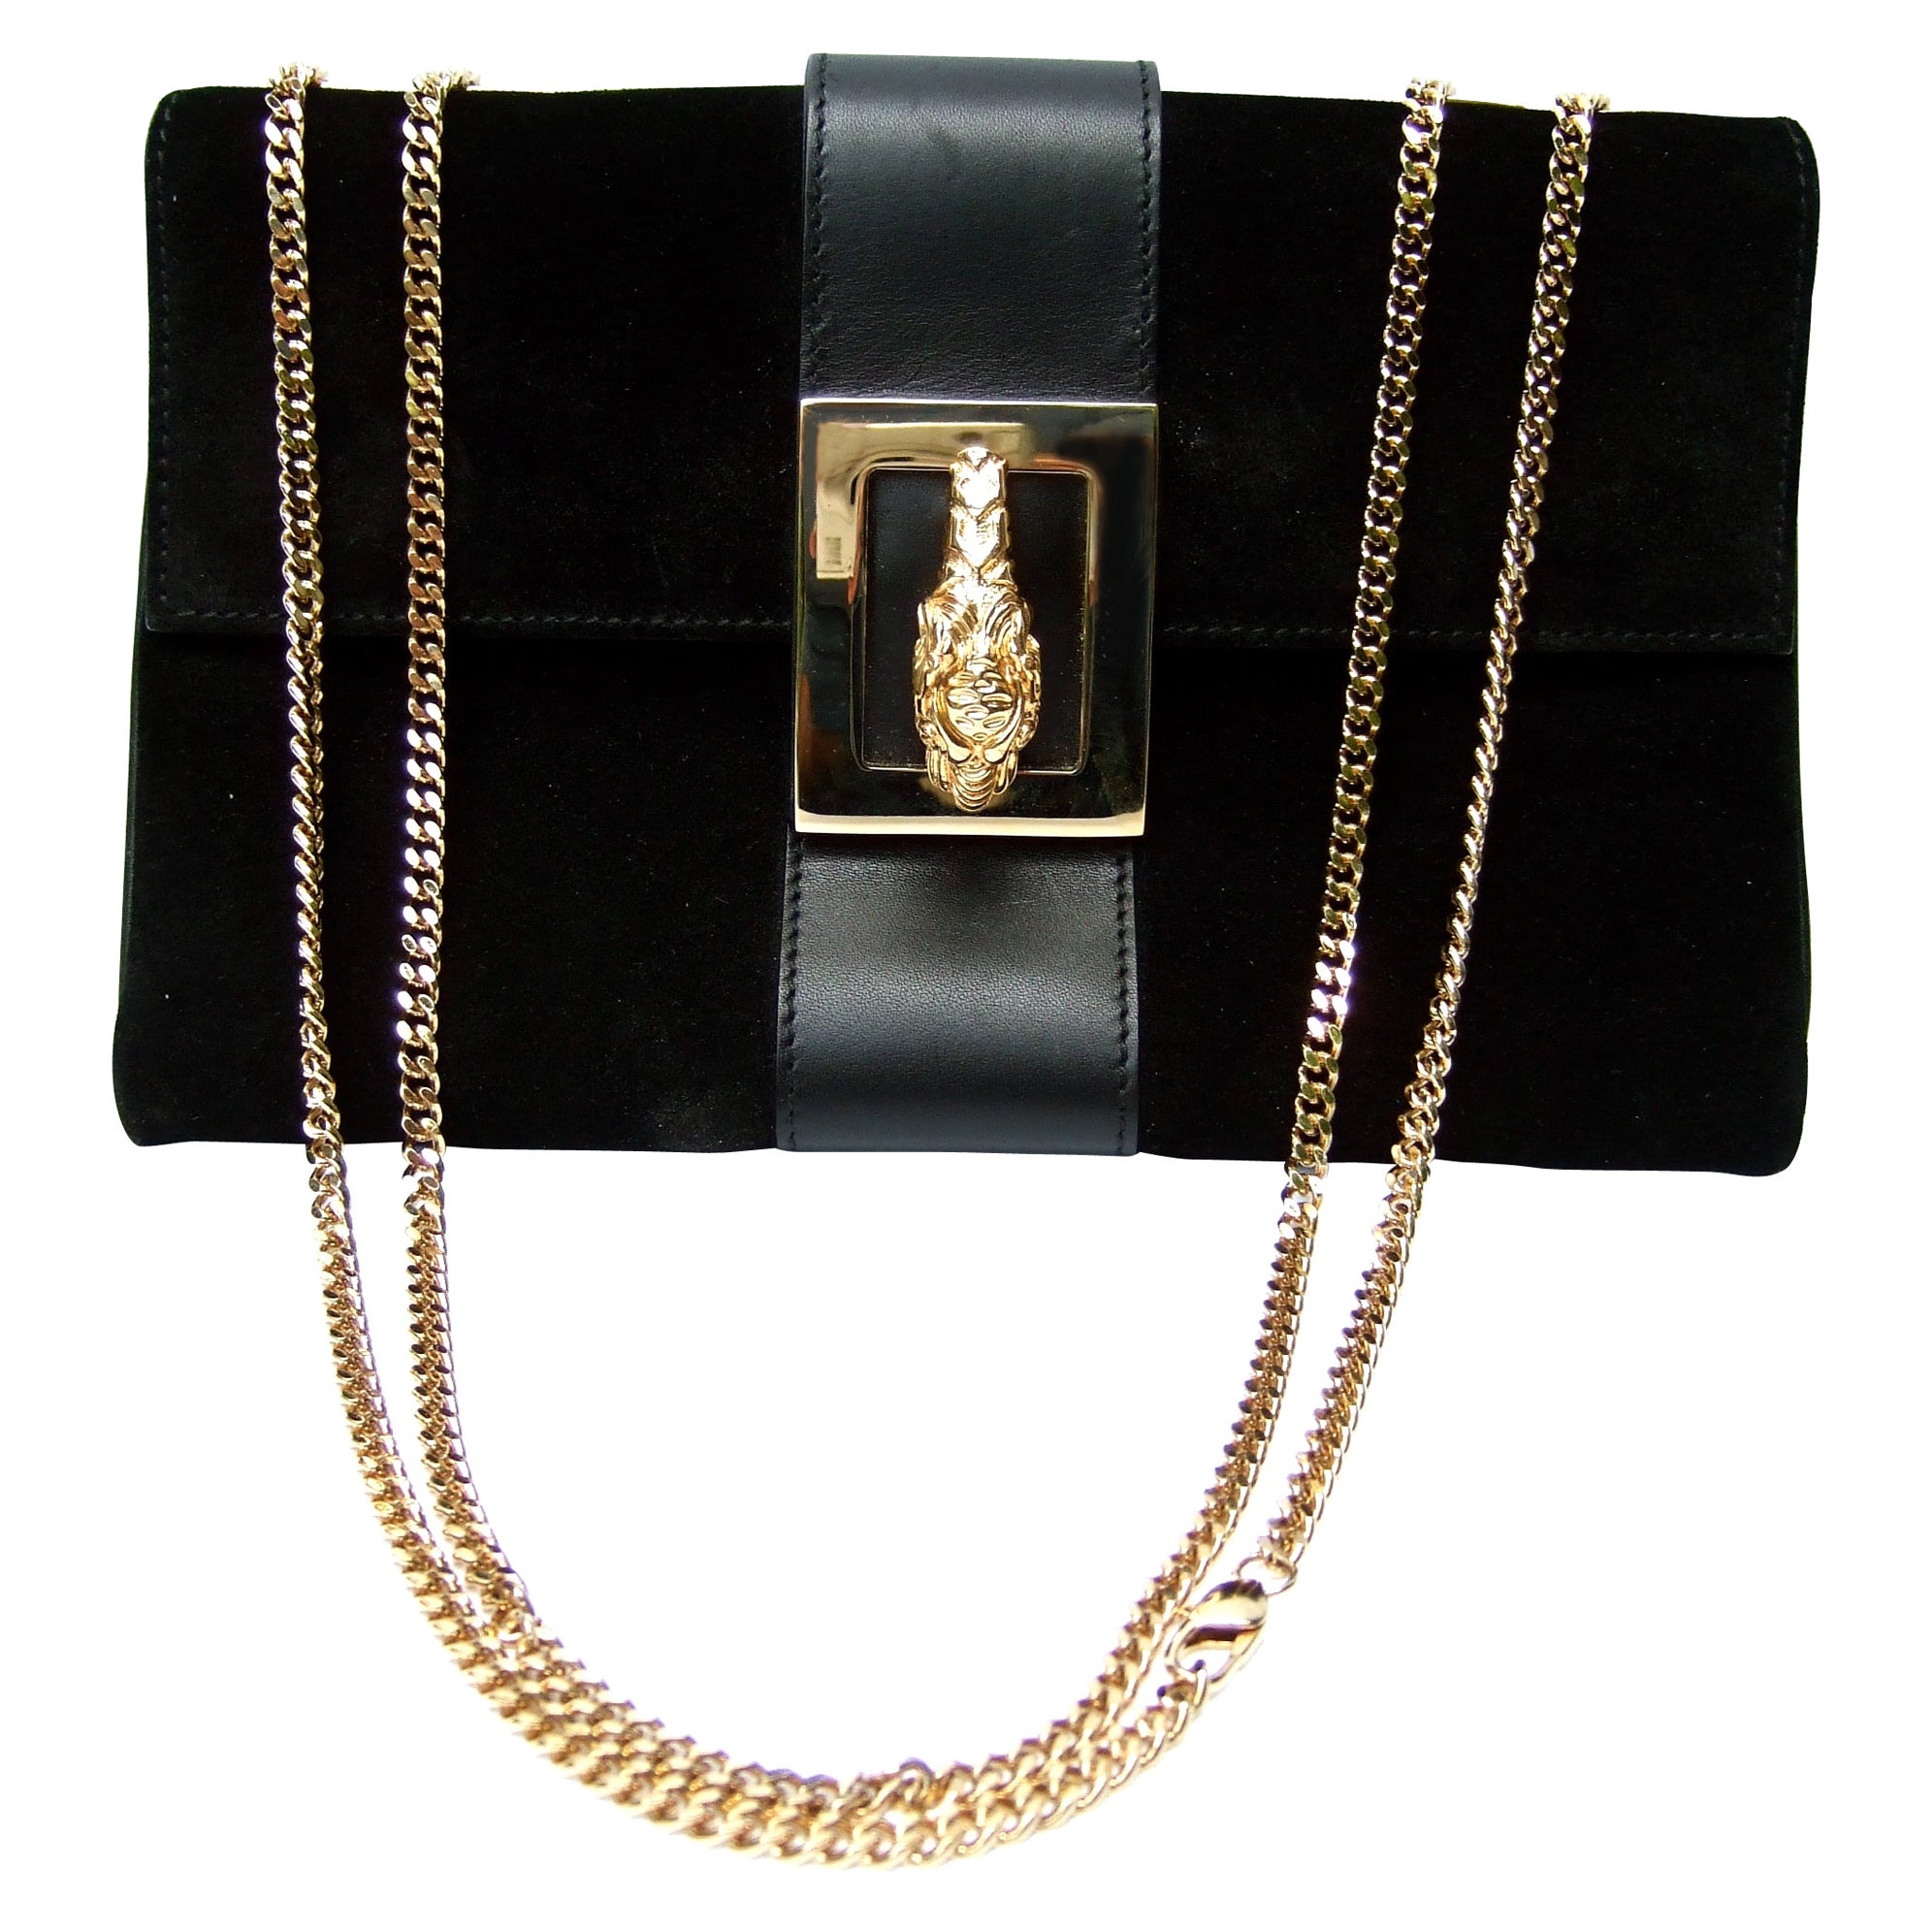 Gucci Italy Rare Black Suede Tiger Emblem Handbag Tom Ford Era c 2000